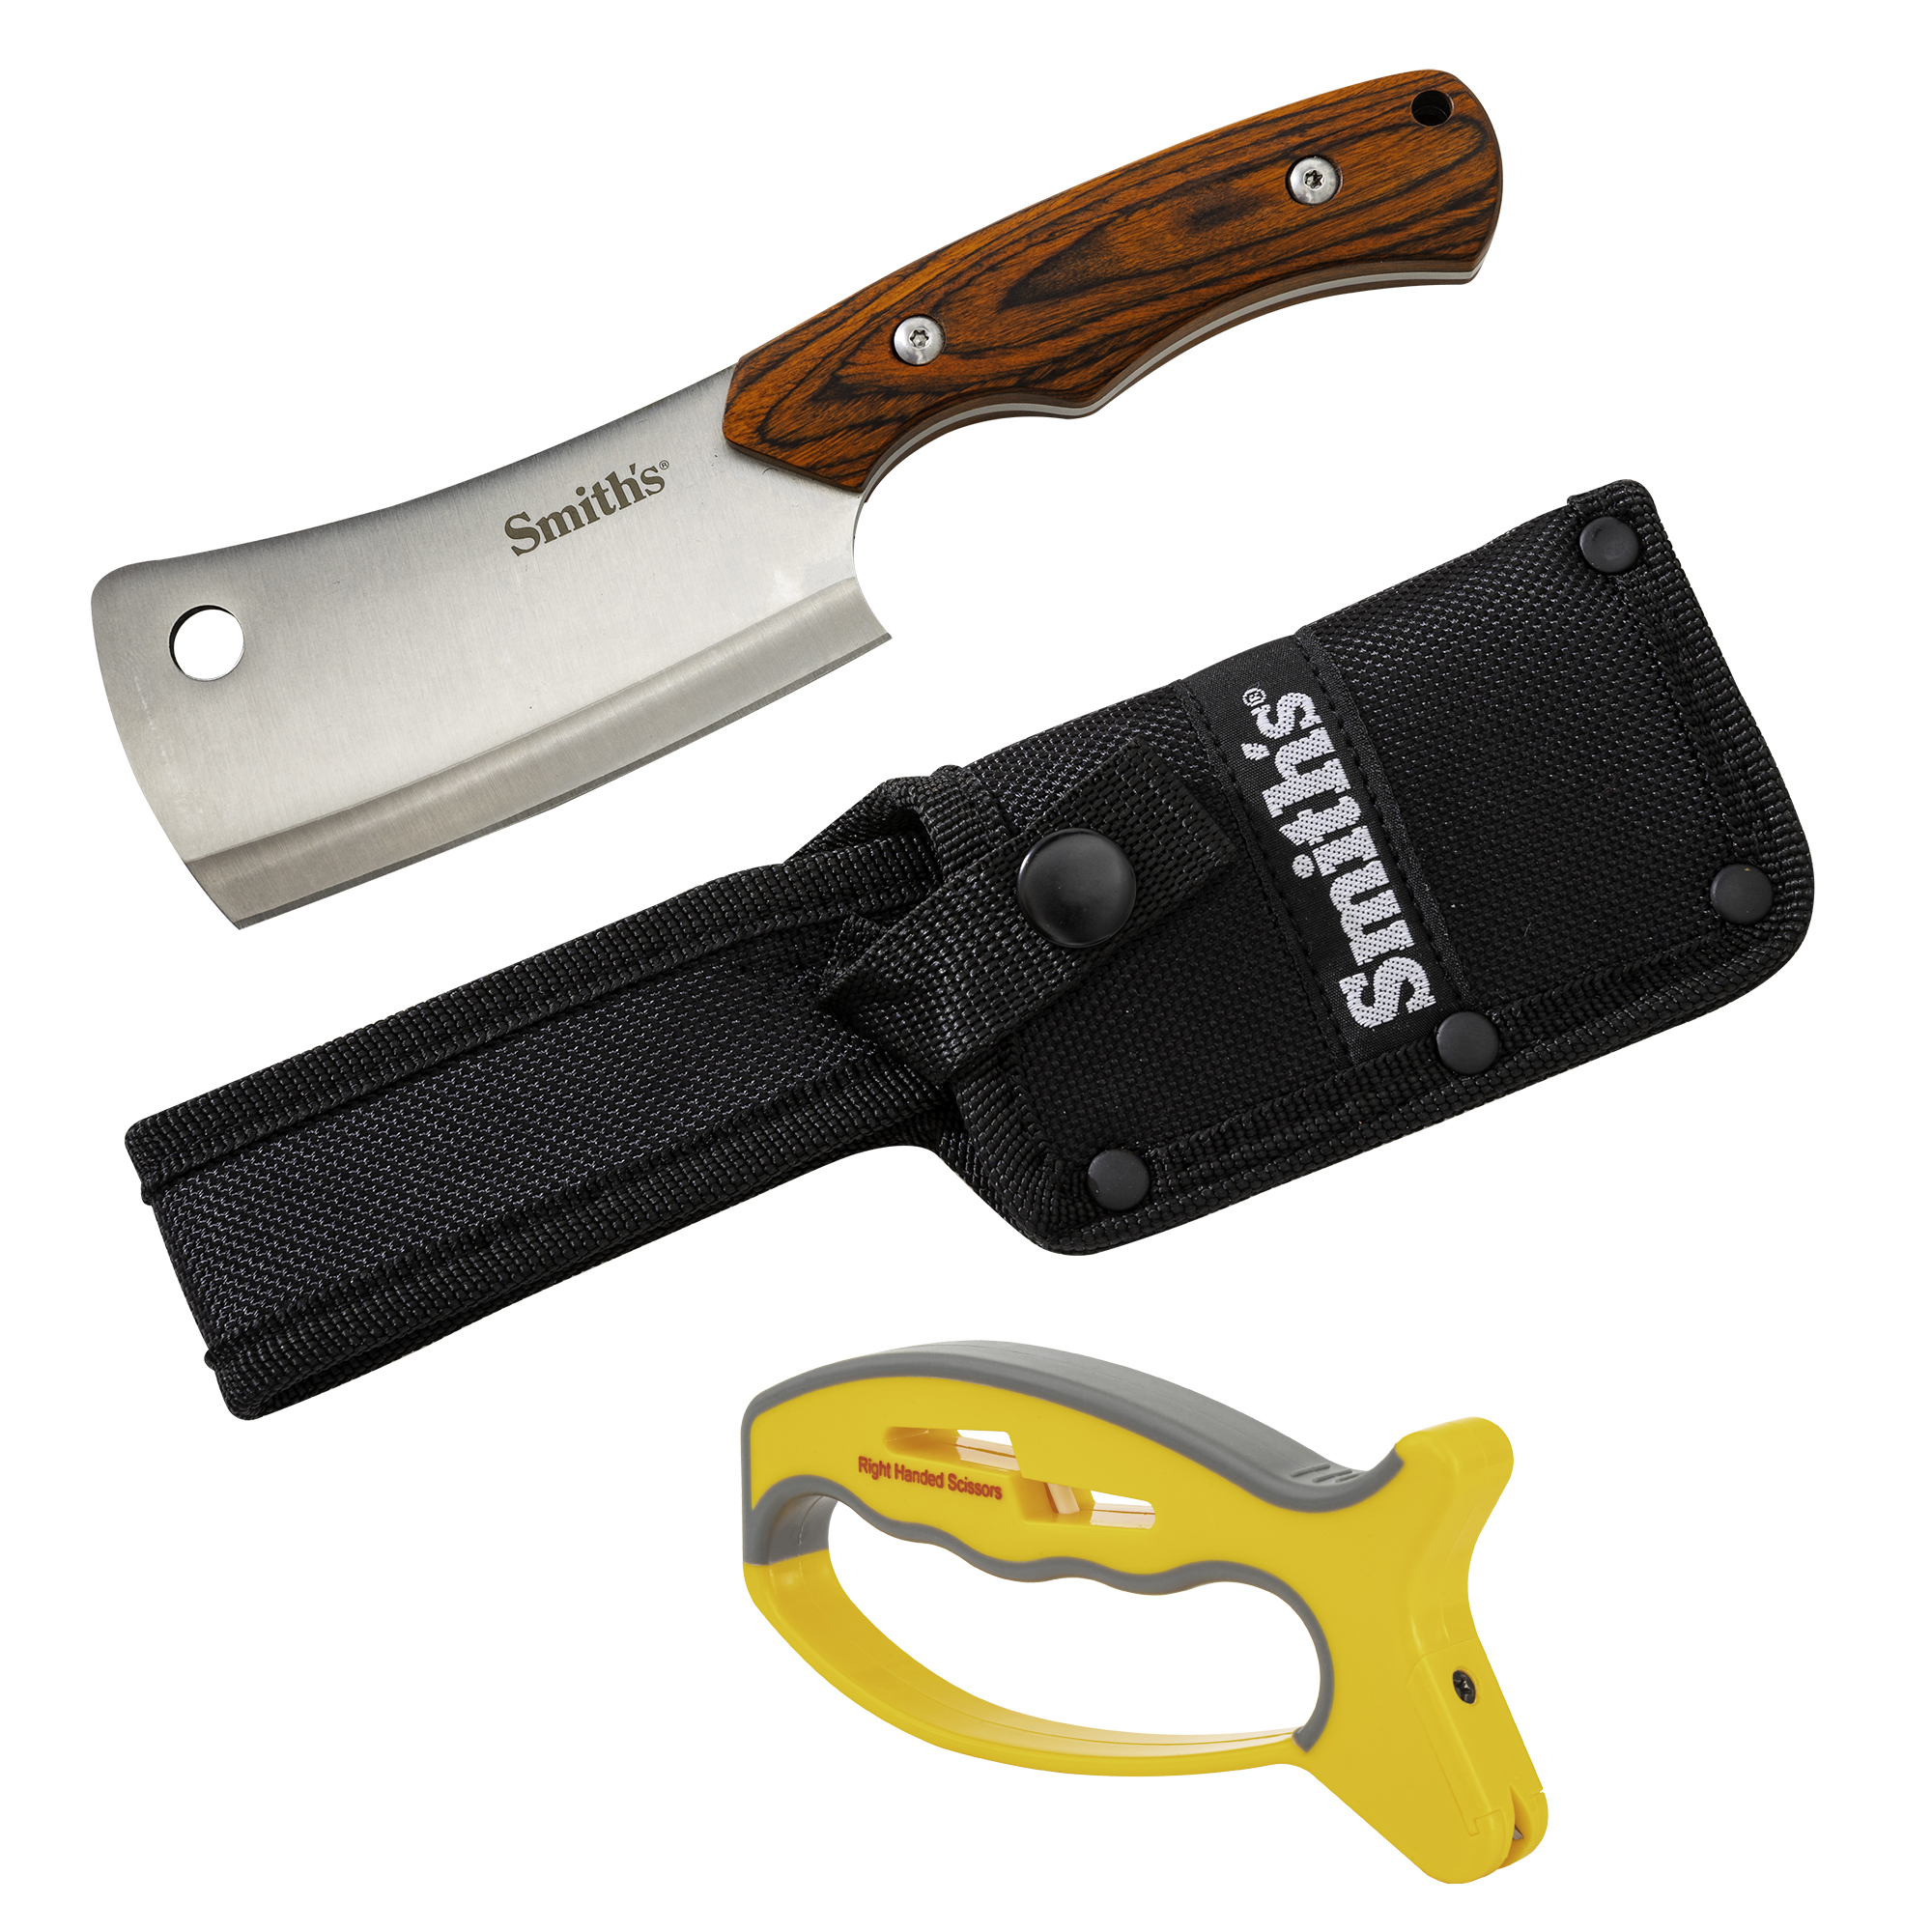 Smith's Jiffy-Pro Handheld Knife & Scissors Sharpener